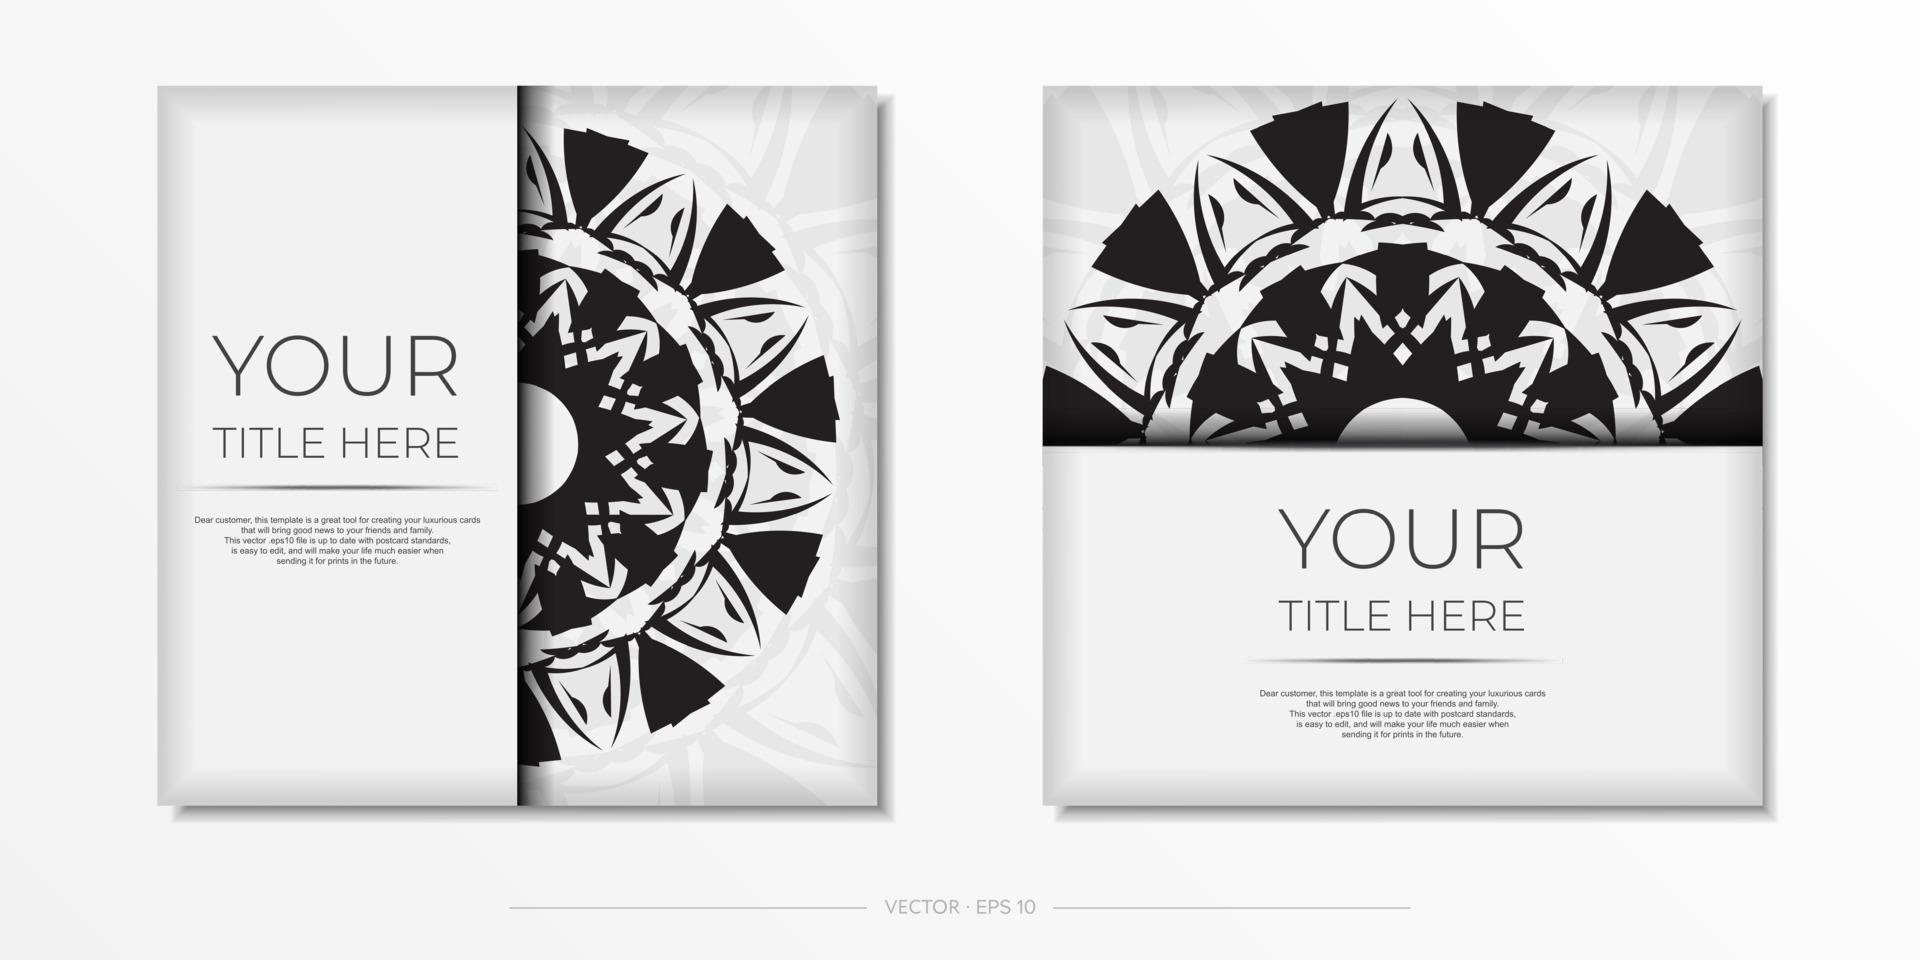 préparer une invitation avec une place pour votre texte et vos motifs abstraits. modèle vectoriel luxueux pour cartes postales de conception d'impression couleur blanche avec des motifs noirs.